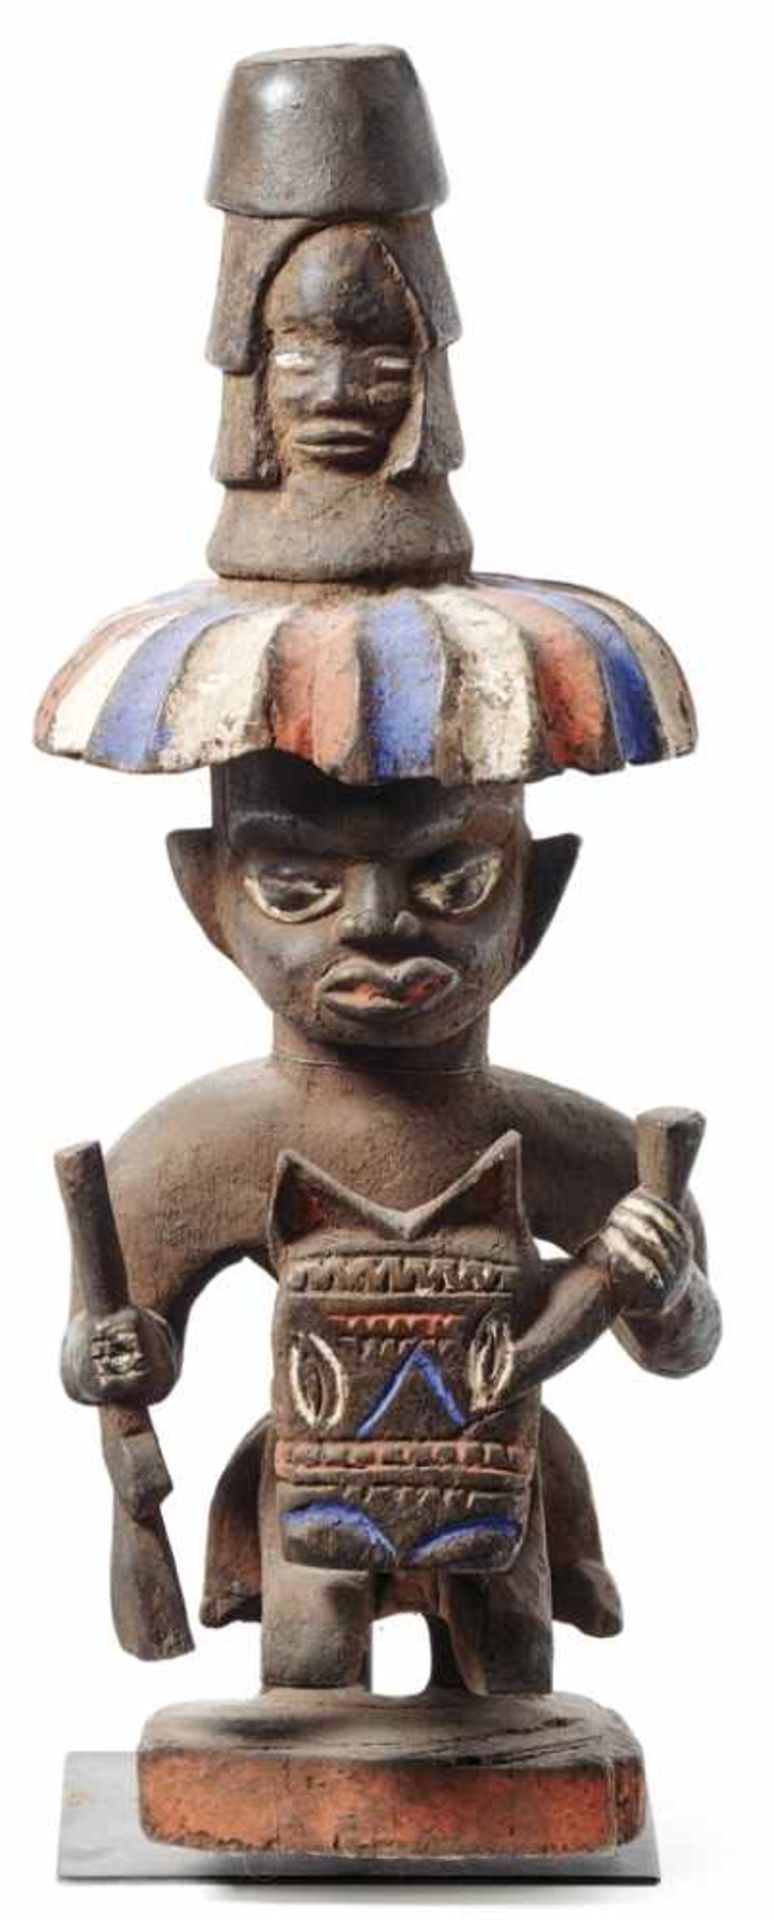 Ritualfigur eines Schutzreiters zu RossKameruner Grasland, Ethnie der Bamileke, um 1920Holz,